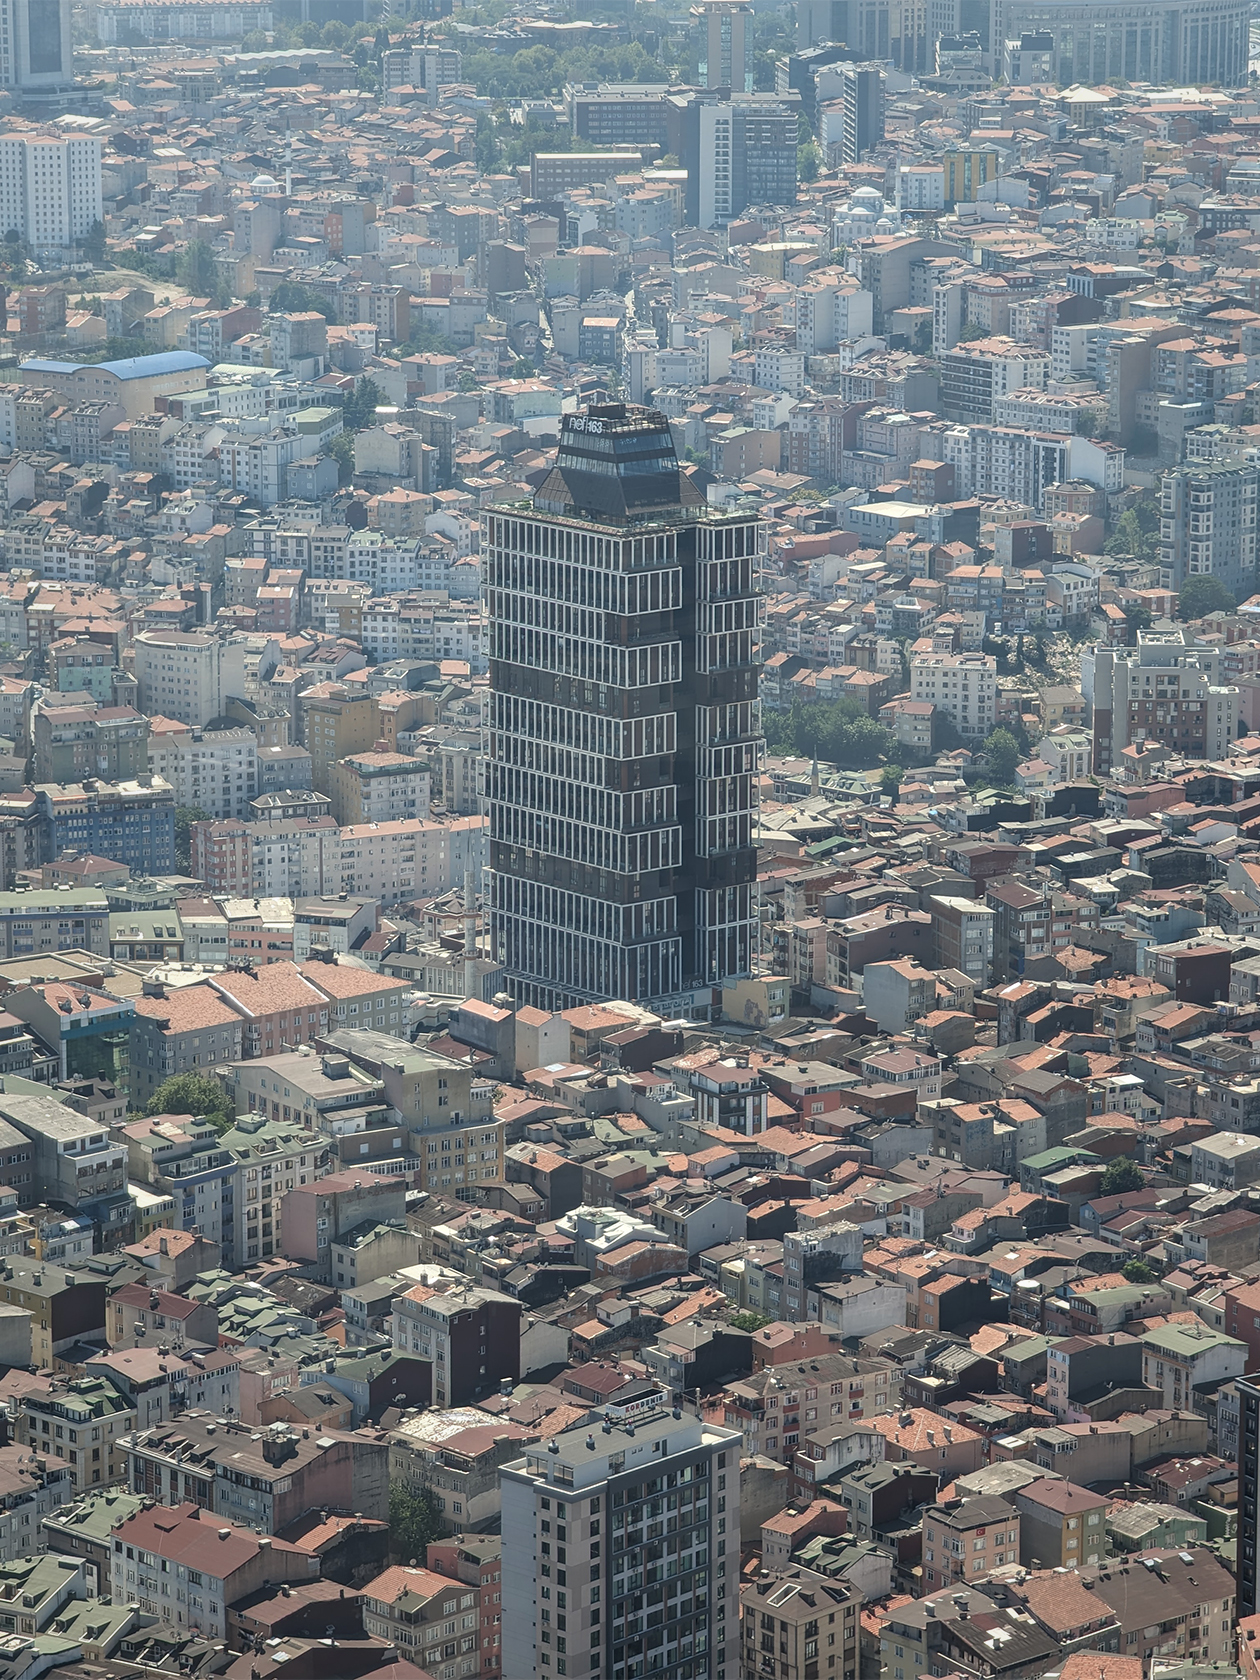 Современные высотные здания в Стамбуле тоже встречаются, их много в европейской и азиатской частях. Большинство находится в отдалении от Босфора. Вид на город с 55 этажа небоскреба «Сапфир» прекрасен! Понимаешь, насколько город огромен: Стамбул больше Москвы по площади в два раза